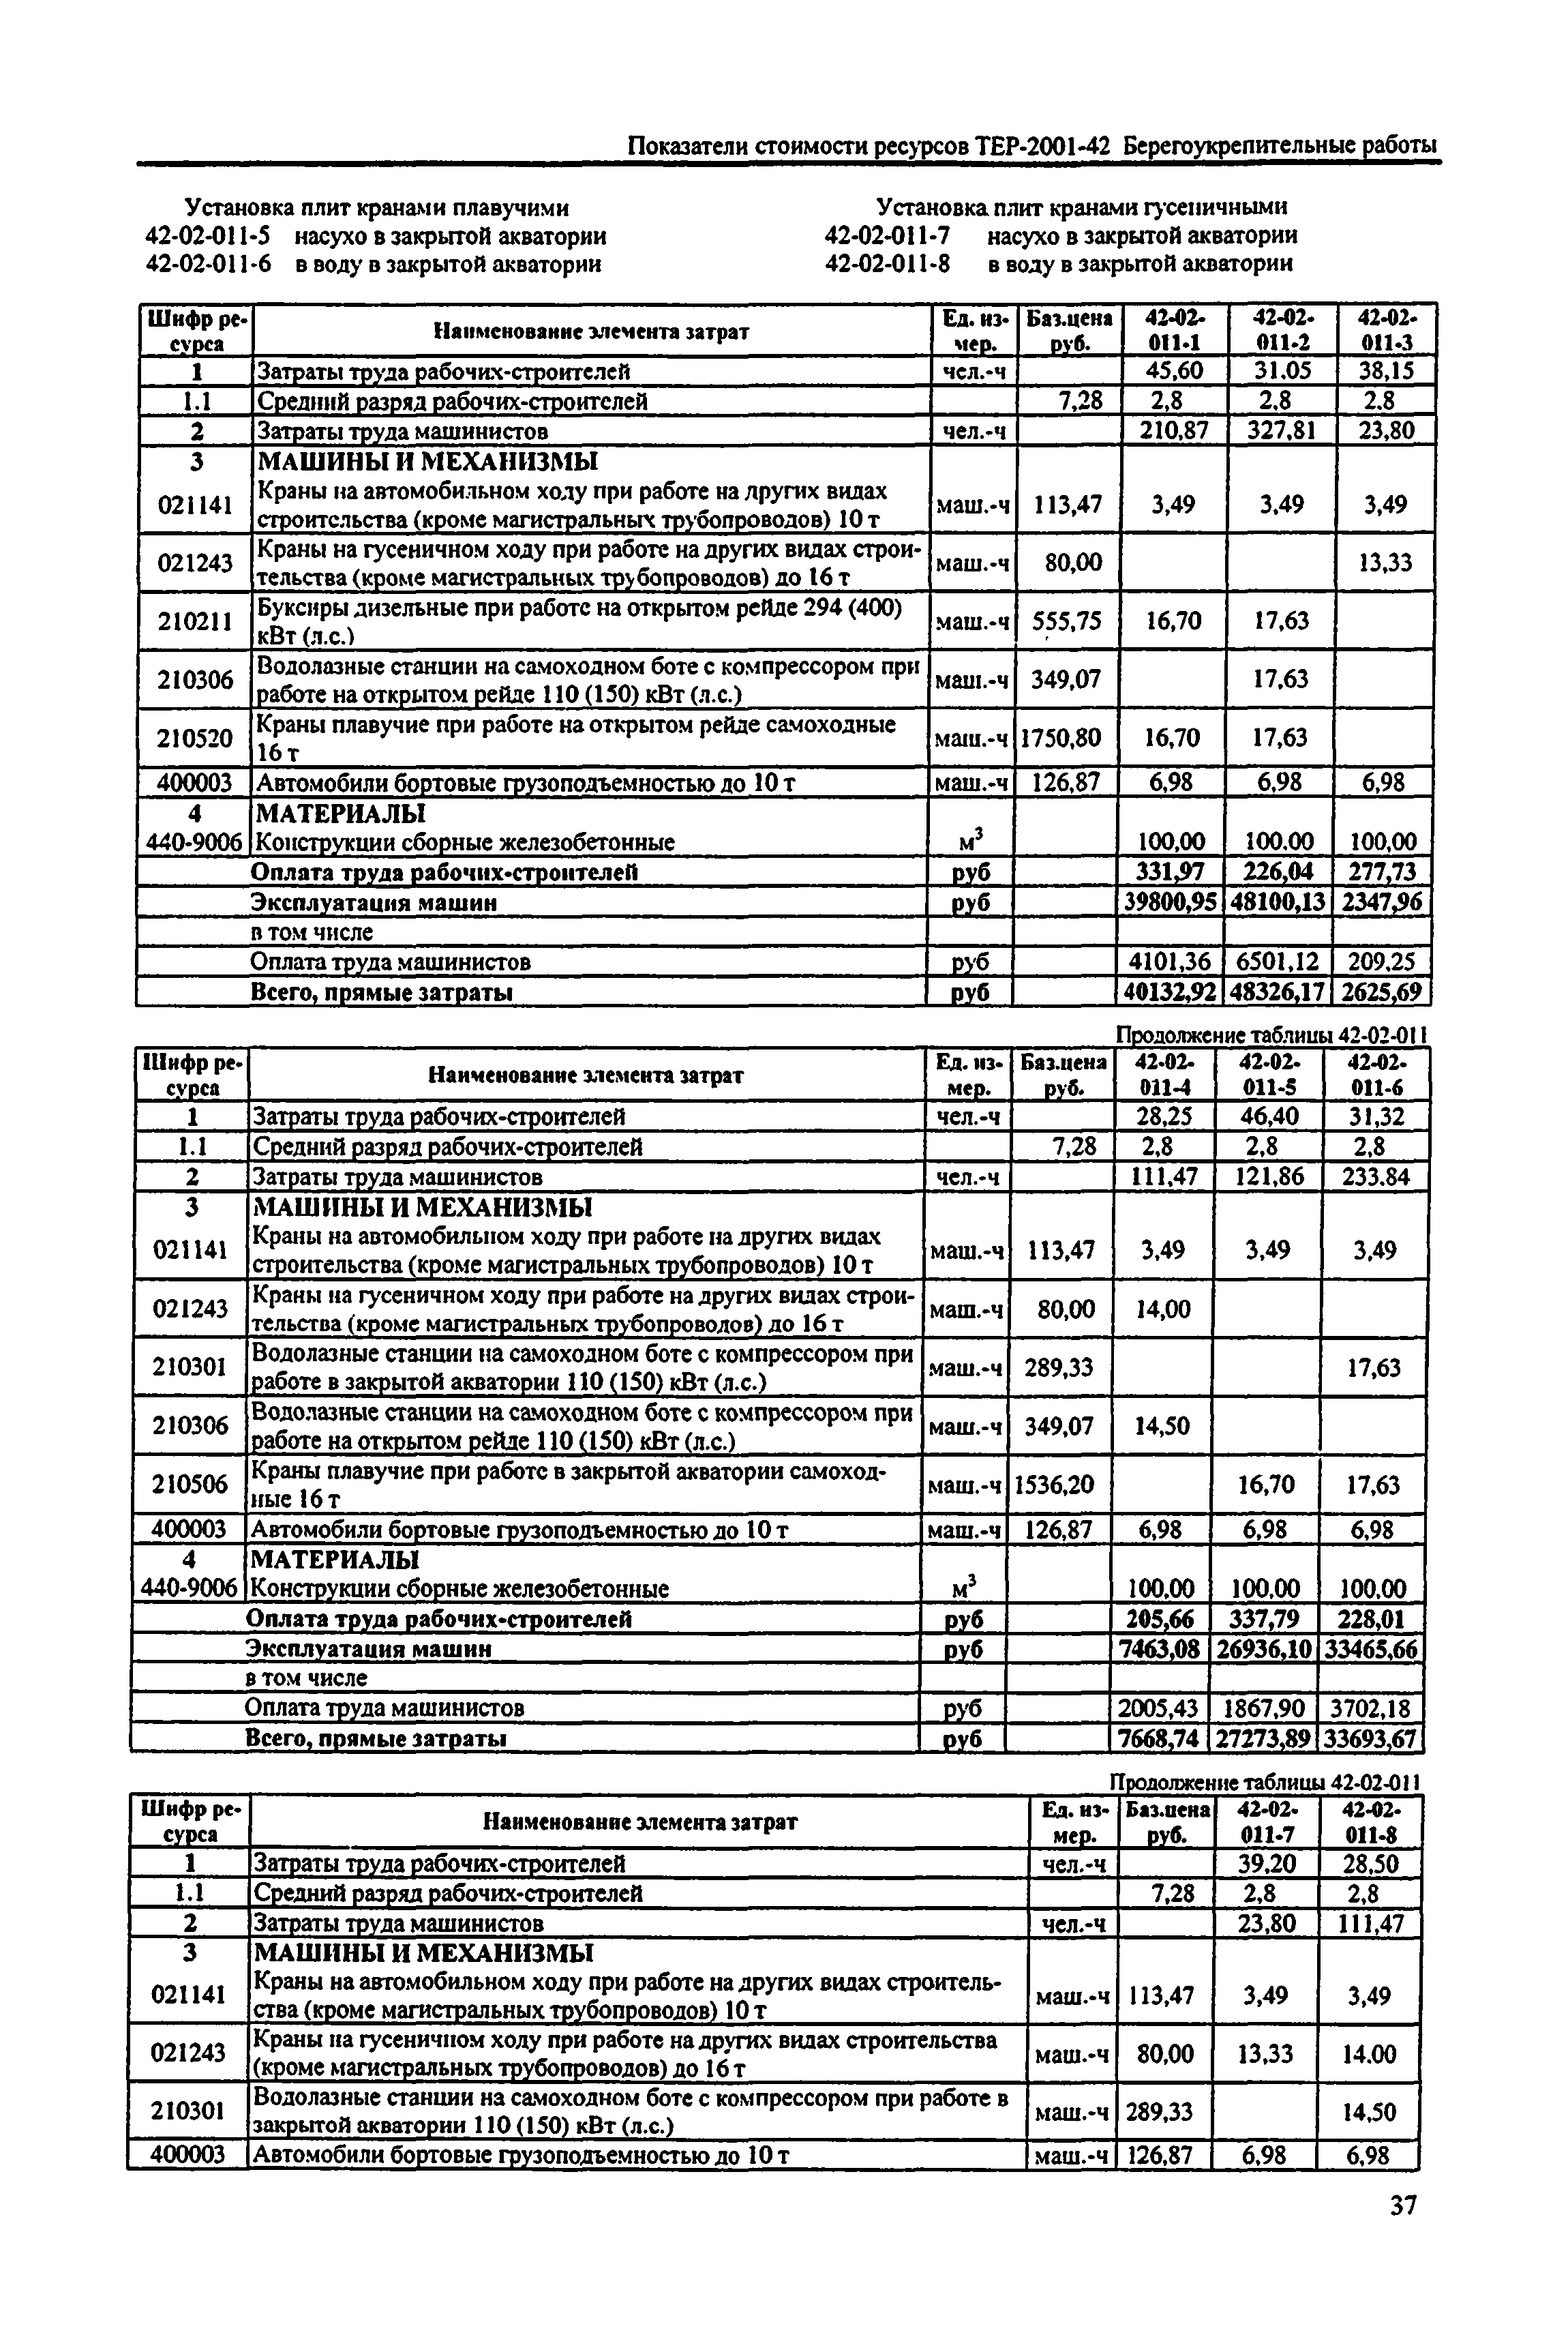 Справочное пособие к ТЕР 81-02-42-2001